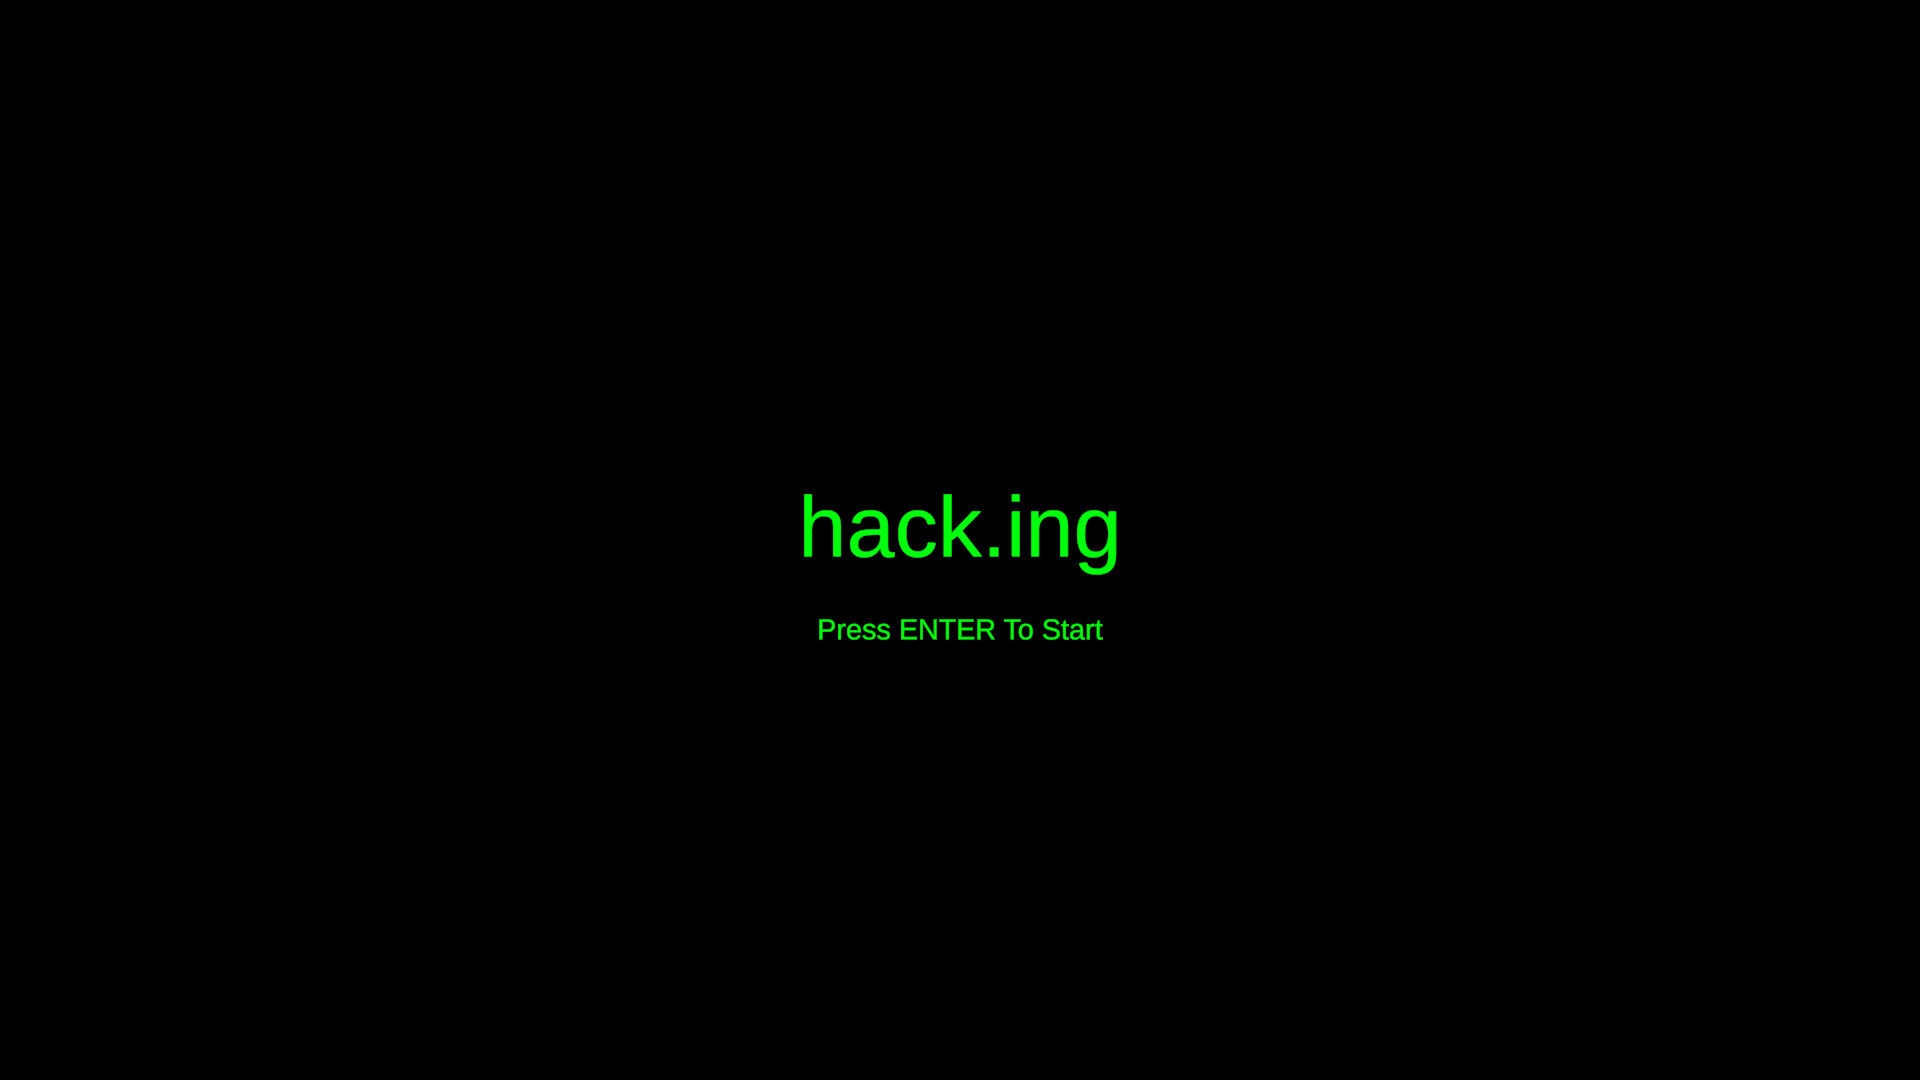 Hack.ing screenshot game